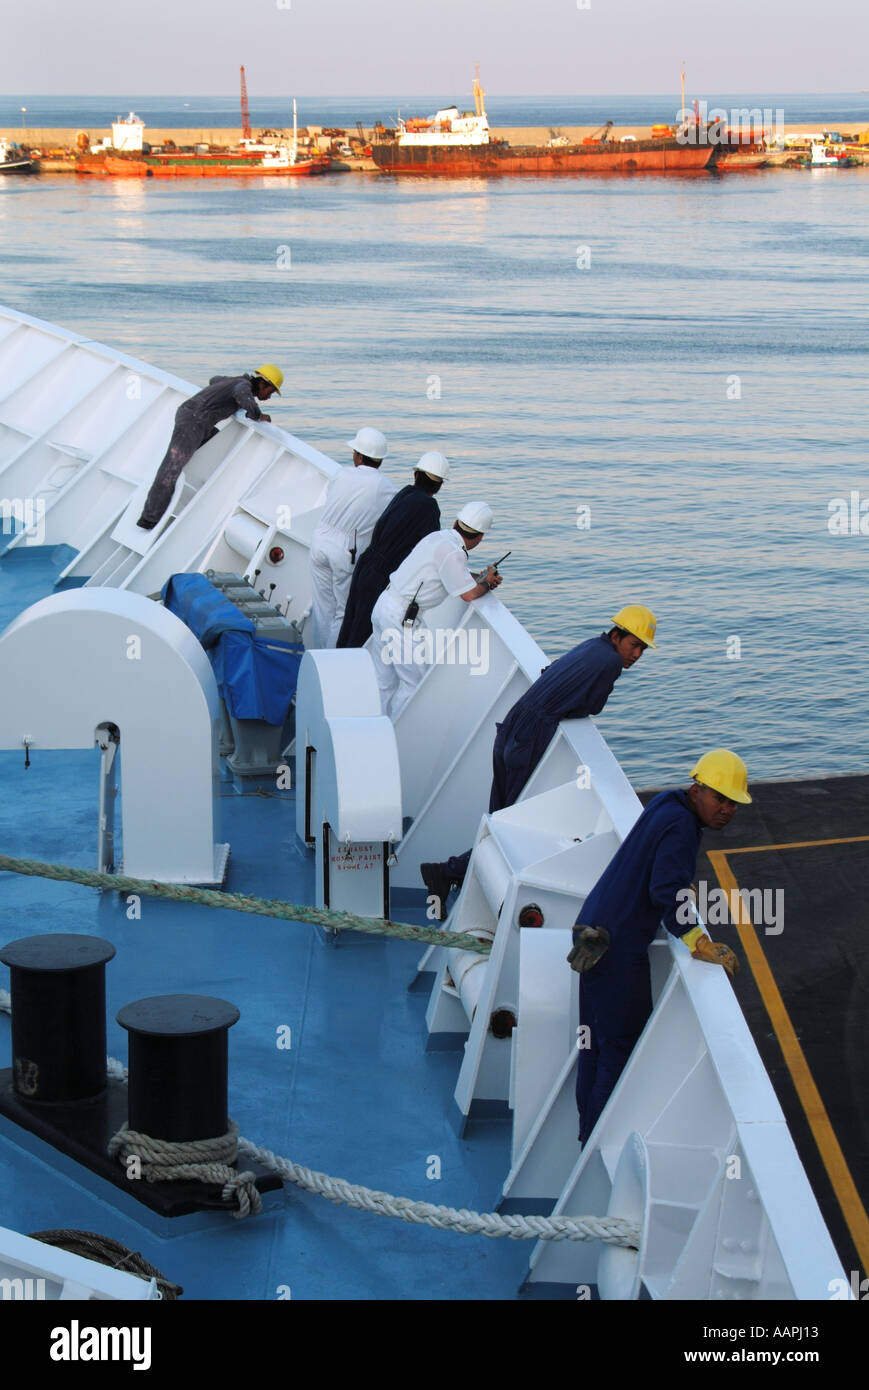 Les officiers et l'équipage on cruise ship penché au-dessus de la proue à vérifier les préparatifs de départ à quai Banque D'Images